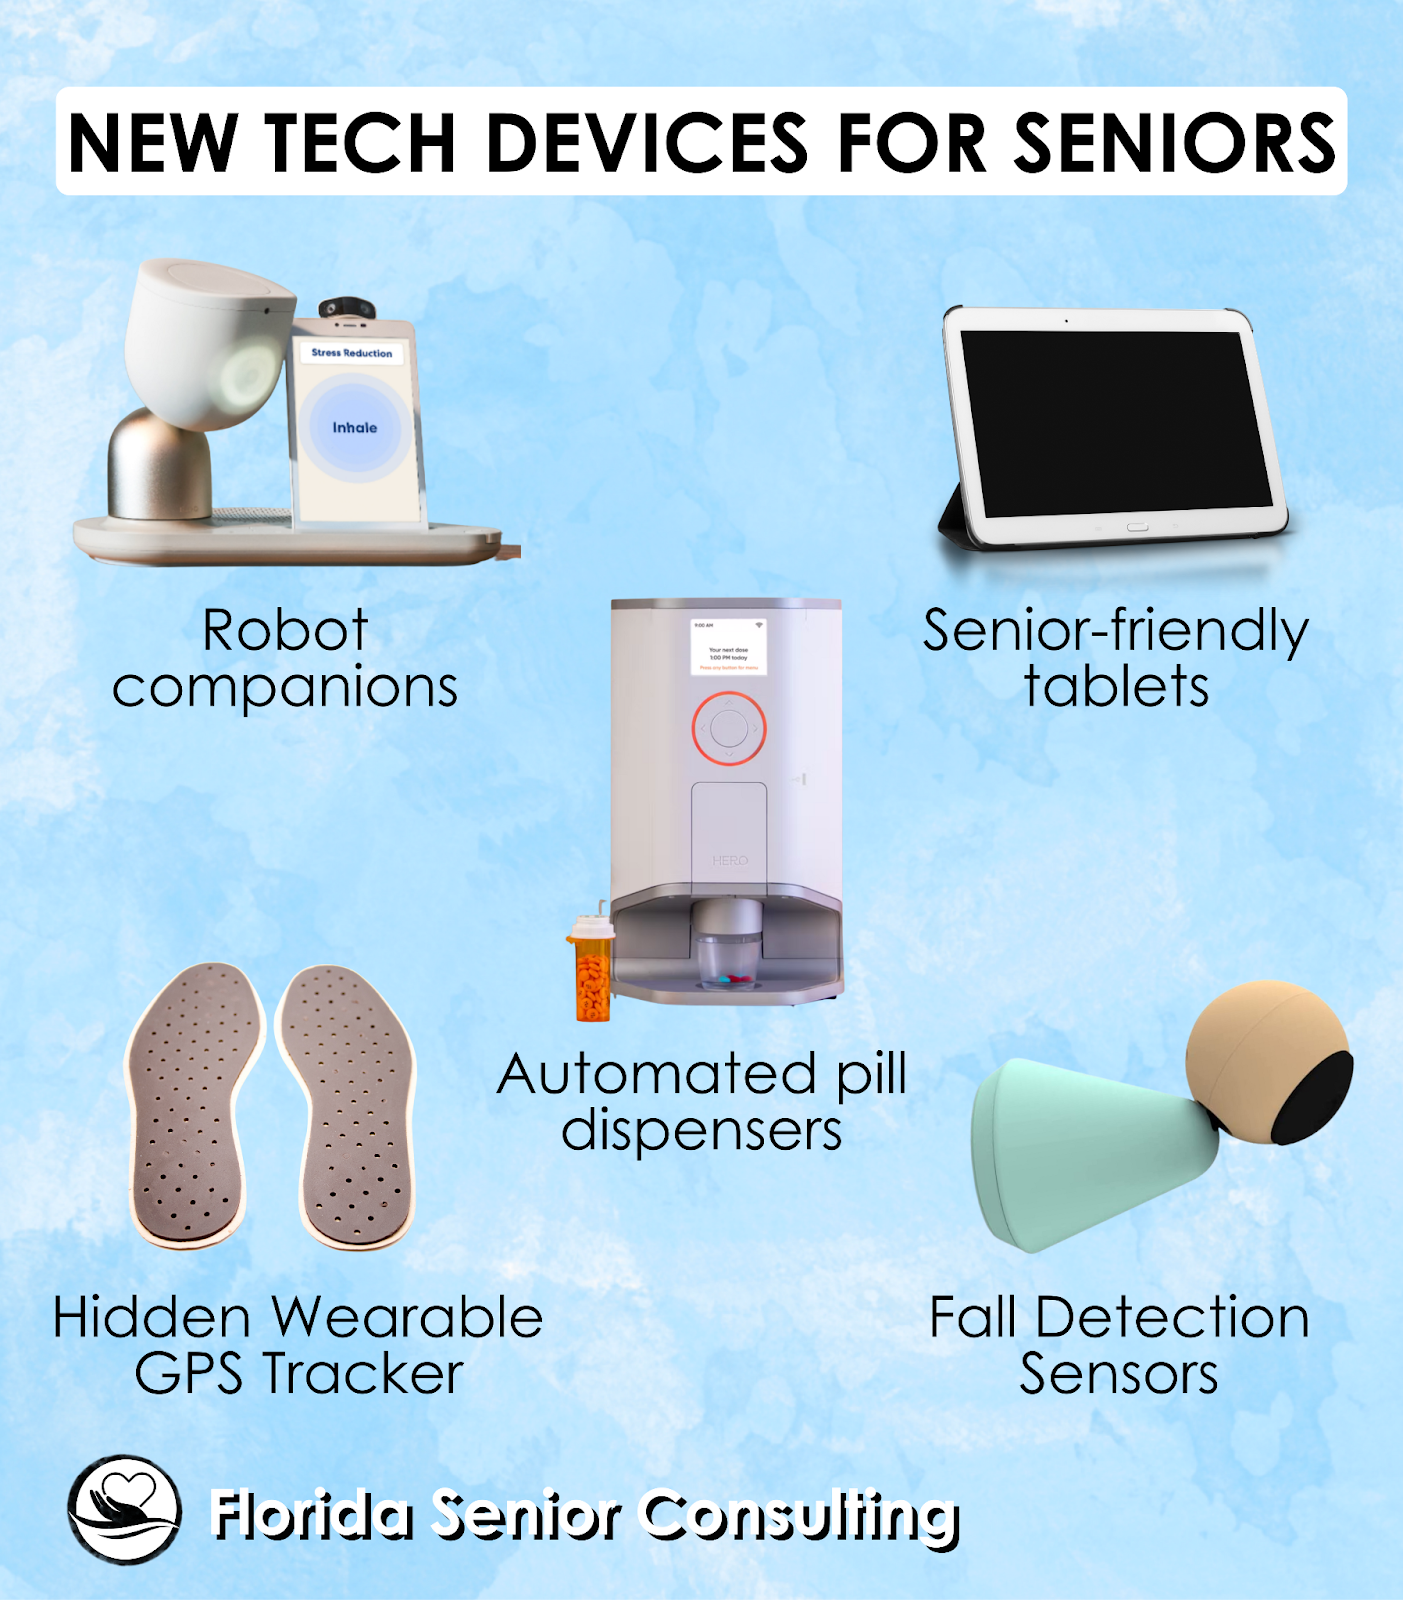 The top technology picks for seniors